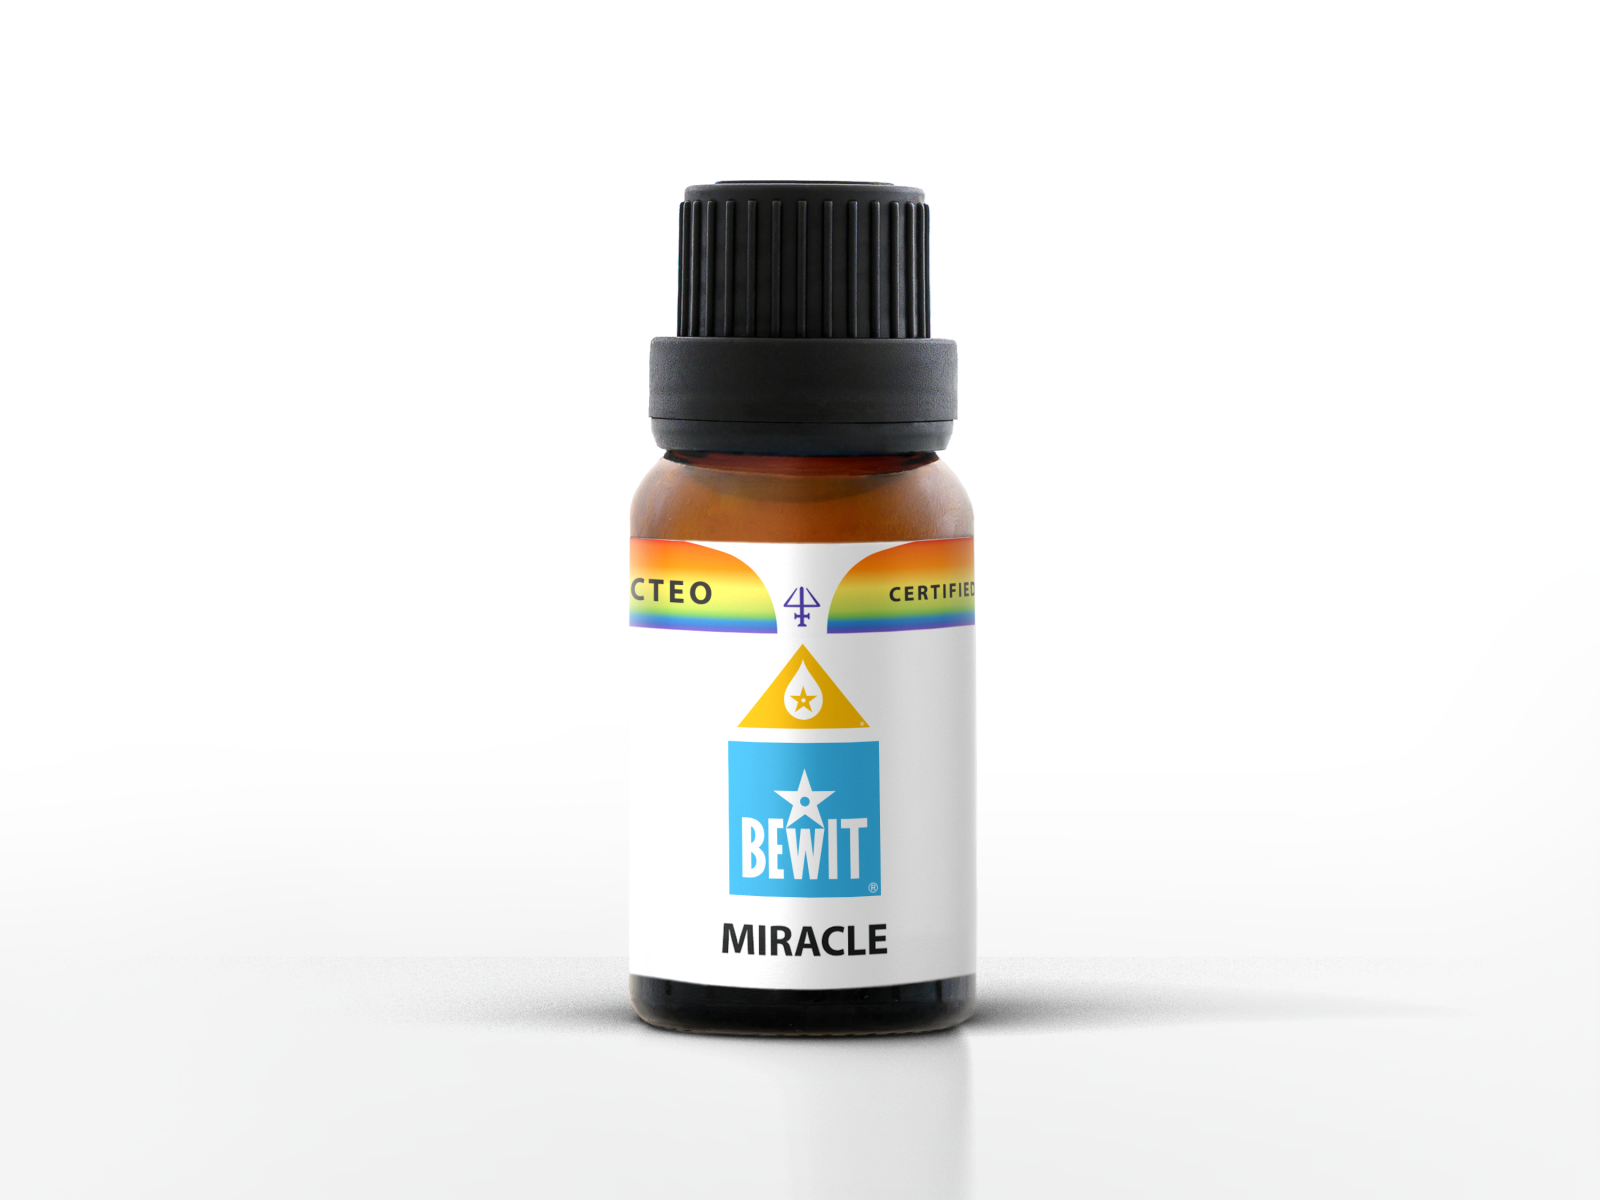 BEWIT MIRACLE - W 100% czysta i naturalna mieszanka olejków eterycznych w jakości CTEO® - 1